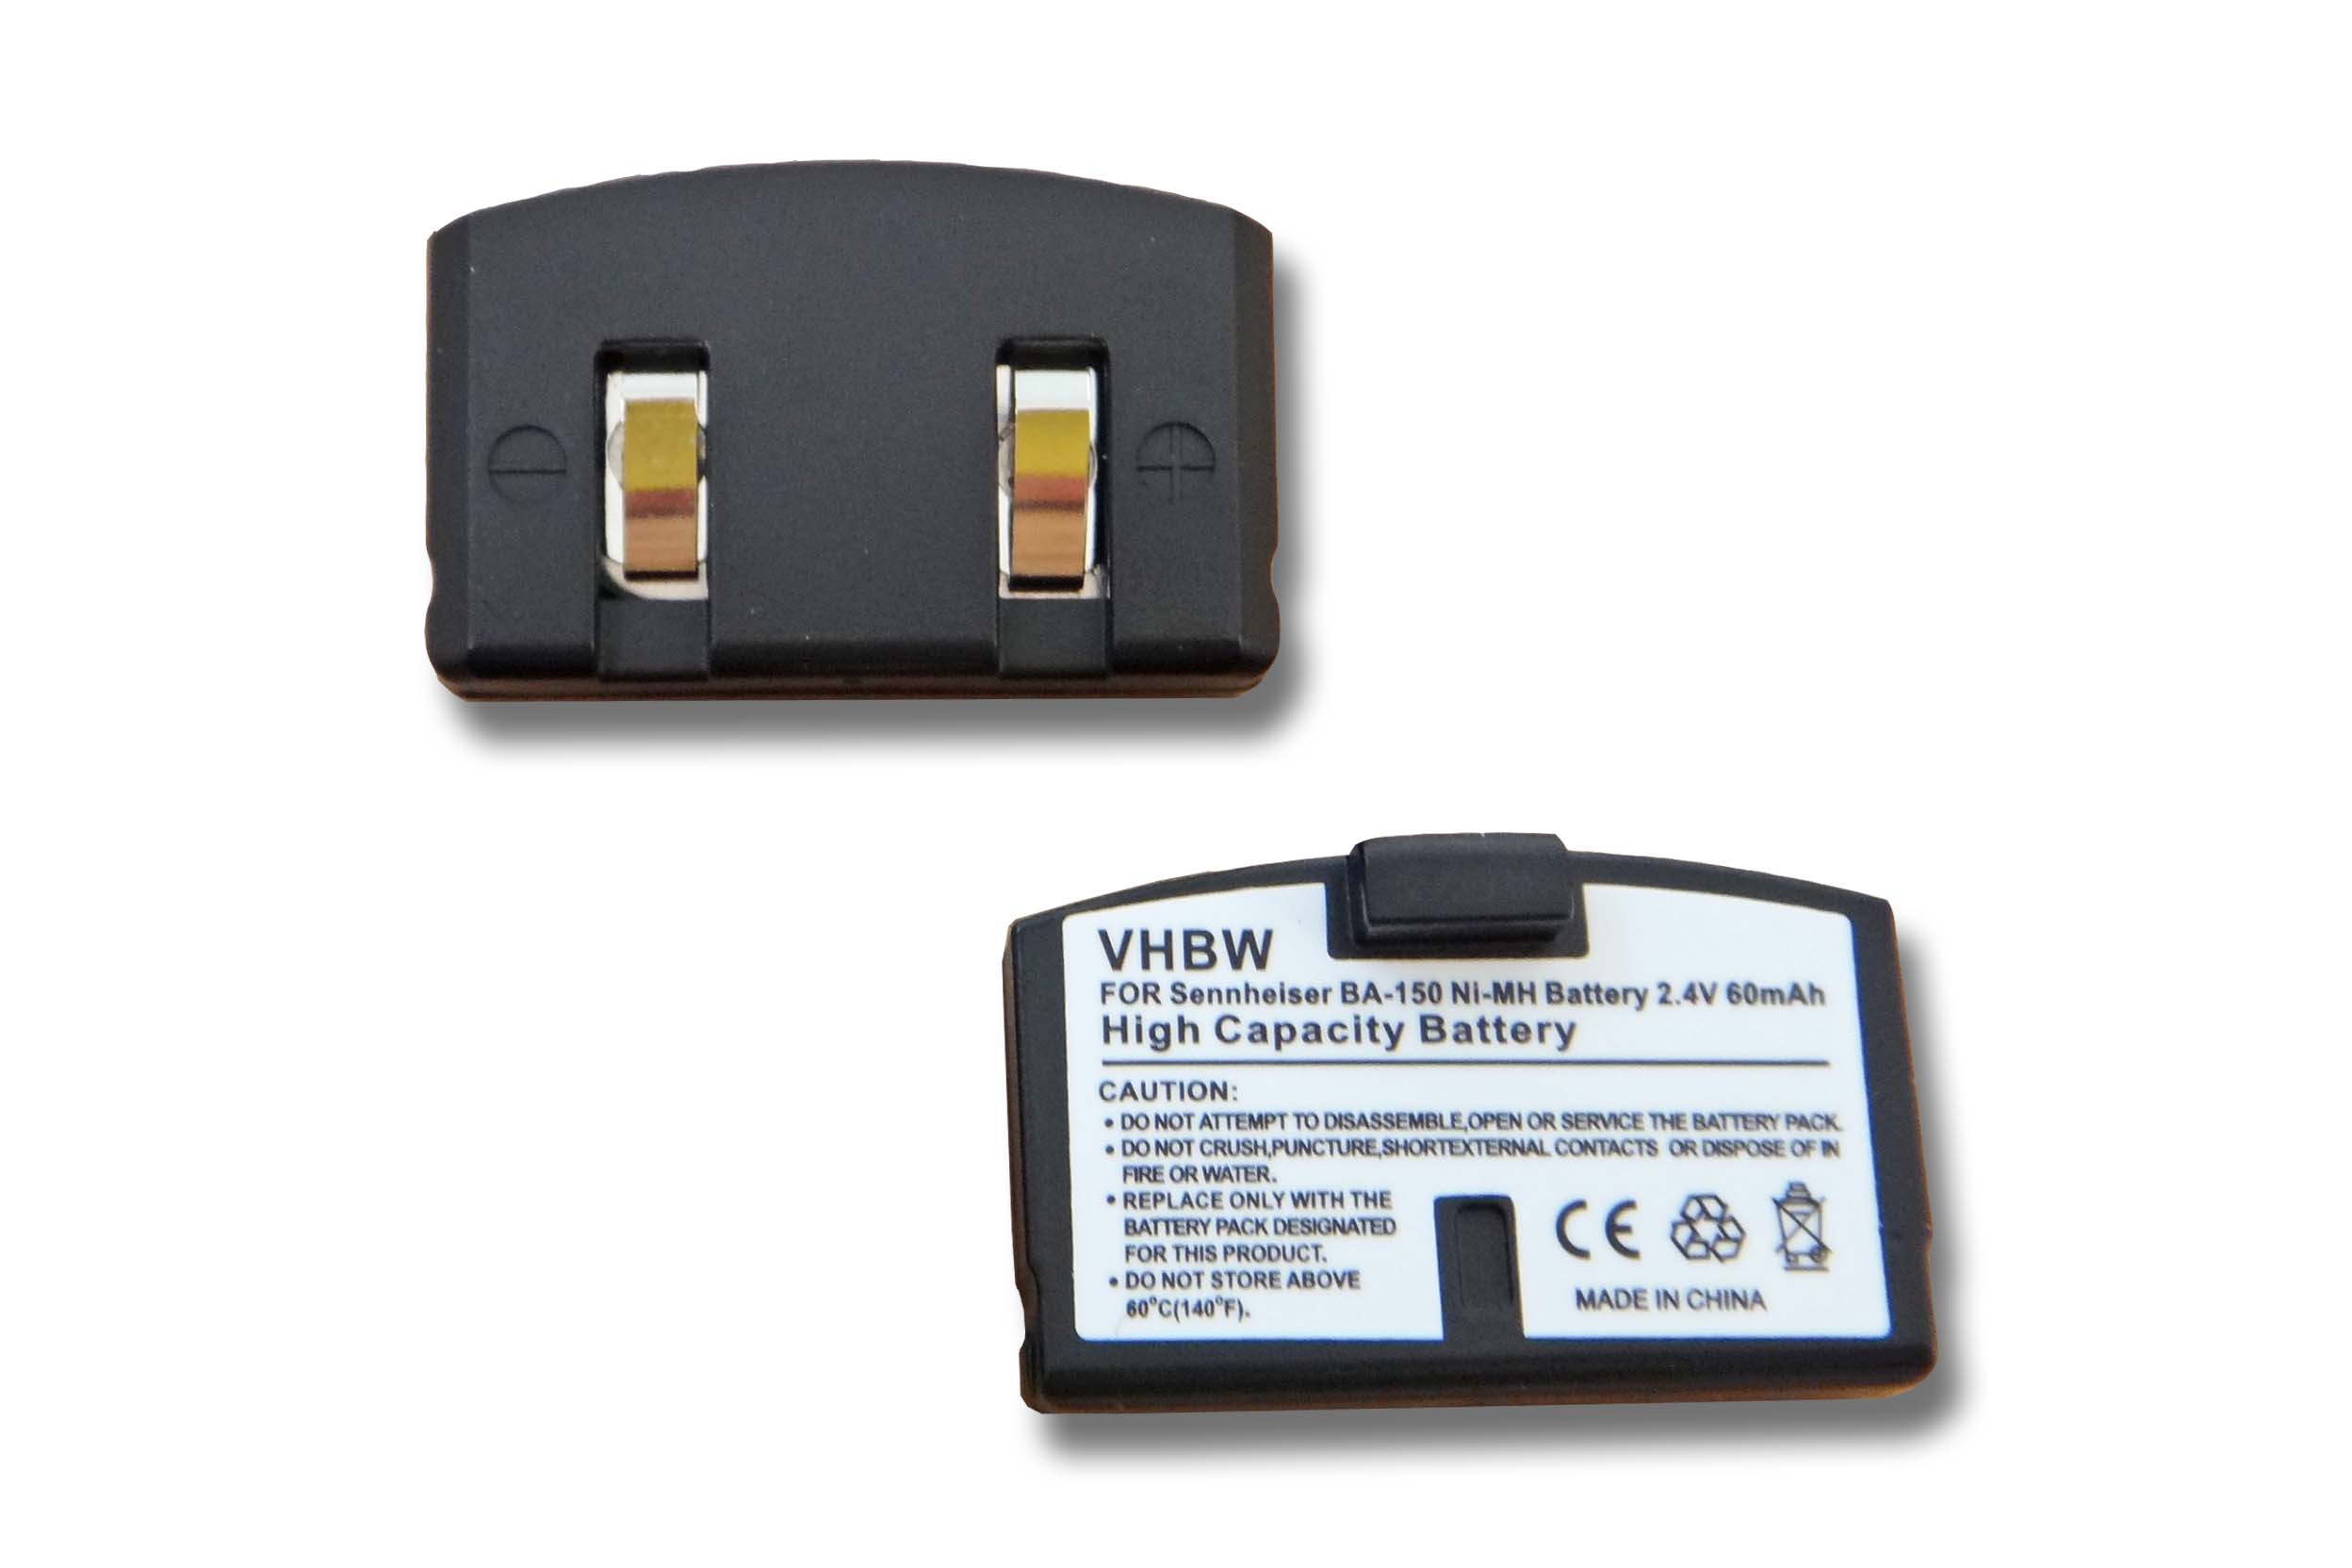 VHBW kompatibel mit Sennheiser IS300 2.4 Volt, Headset, HDR IS150, HDR 250, 150, RI RI NiMH HDR 85, 8-9, Akku - 60 IS380, 80